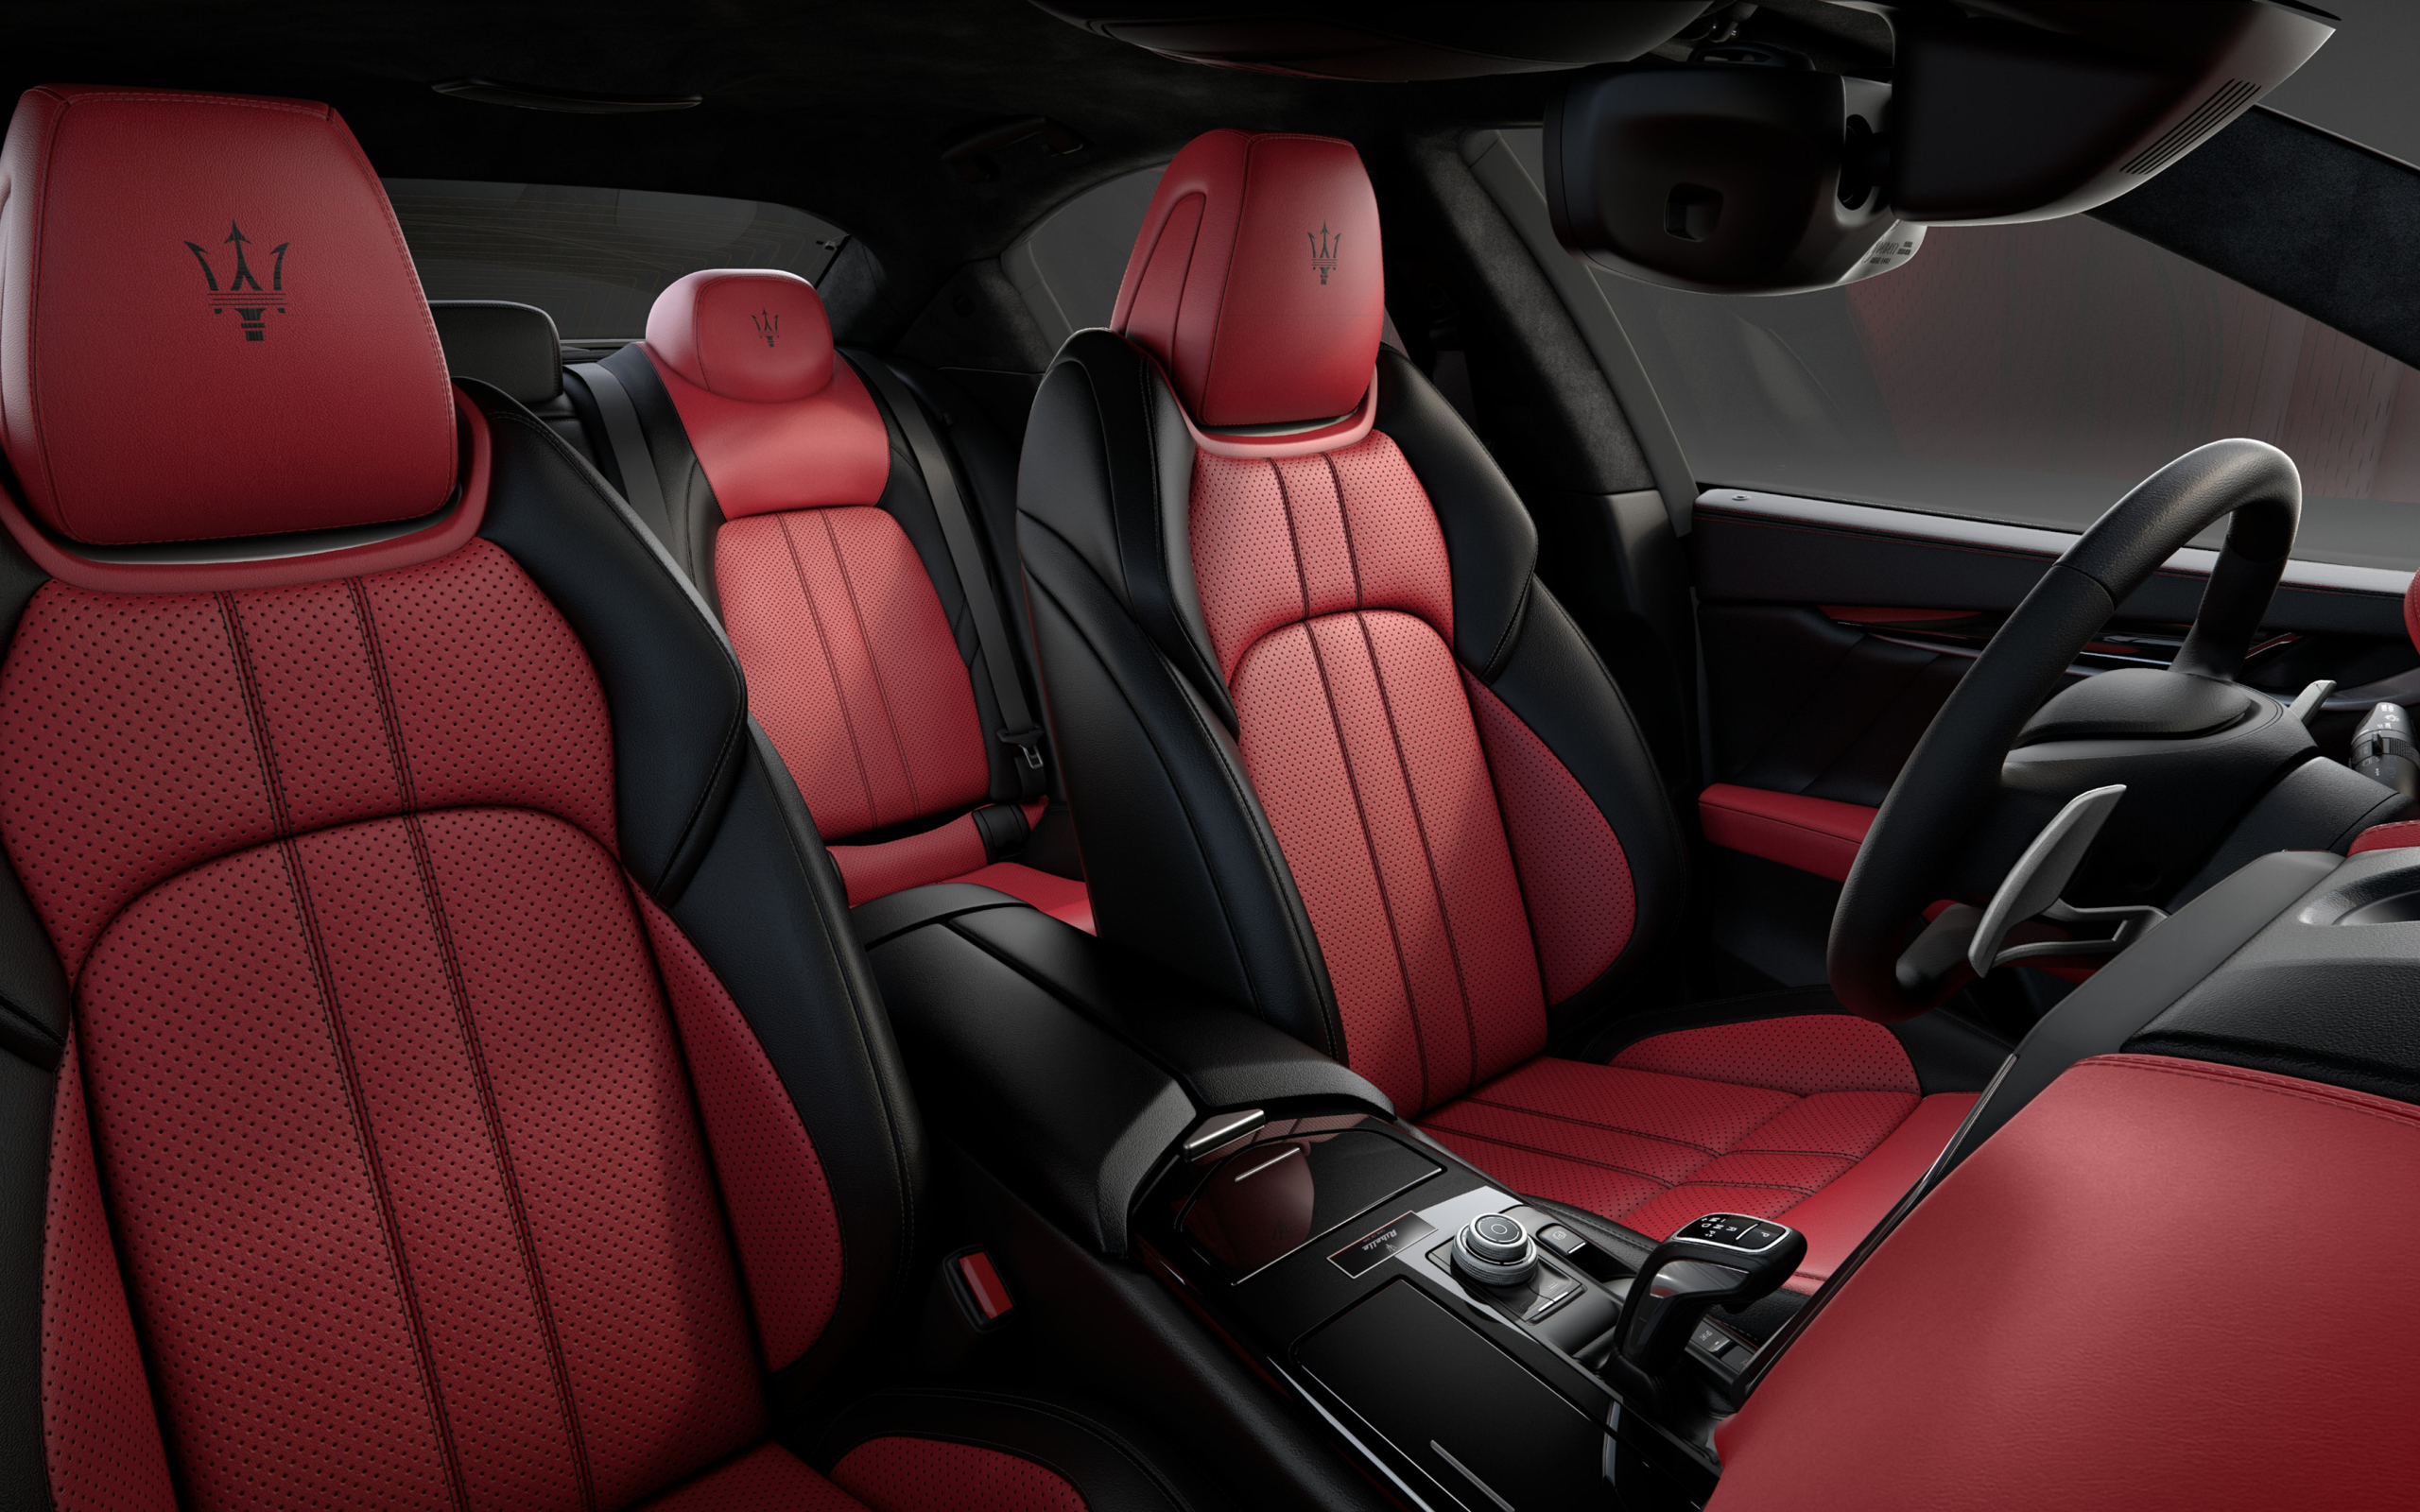 Дорогой красный с черным кожаный салон автомобиля Maserati Ghibli Ribelle 2018